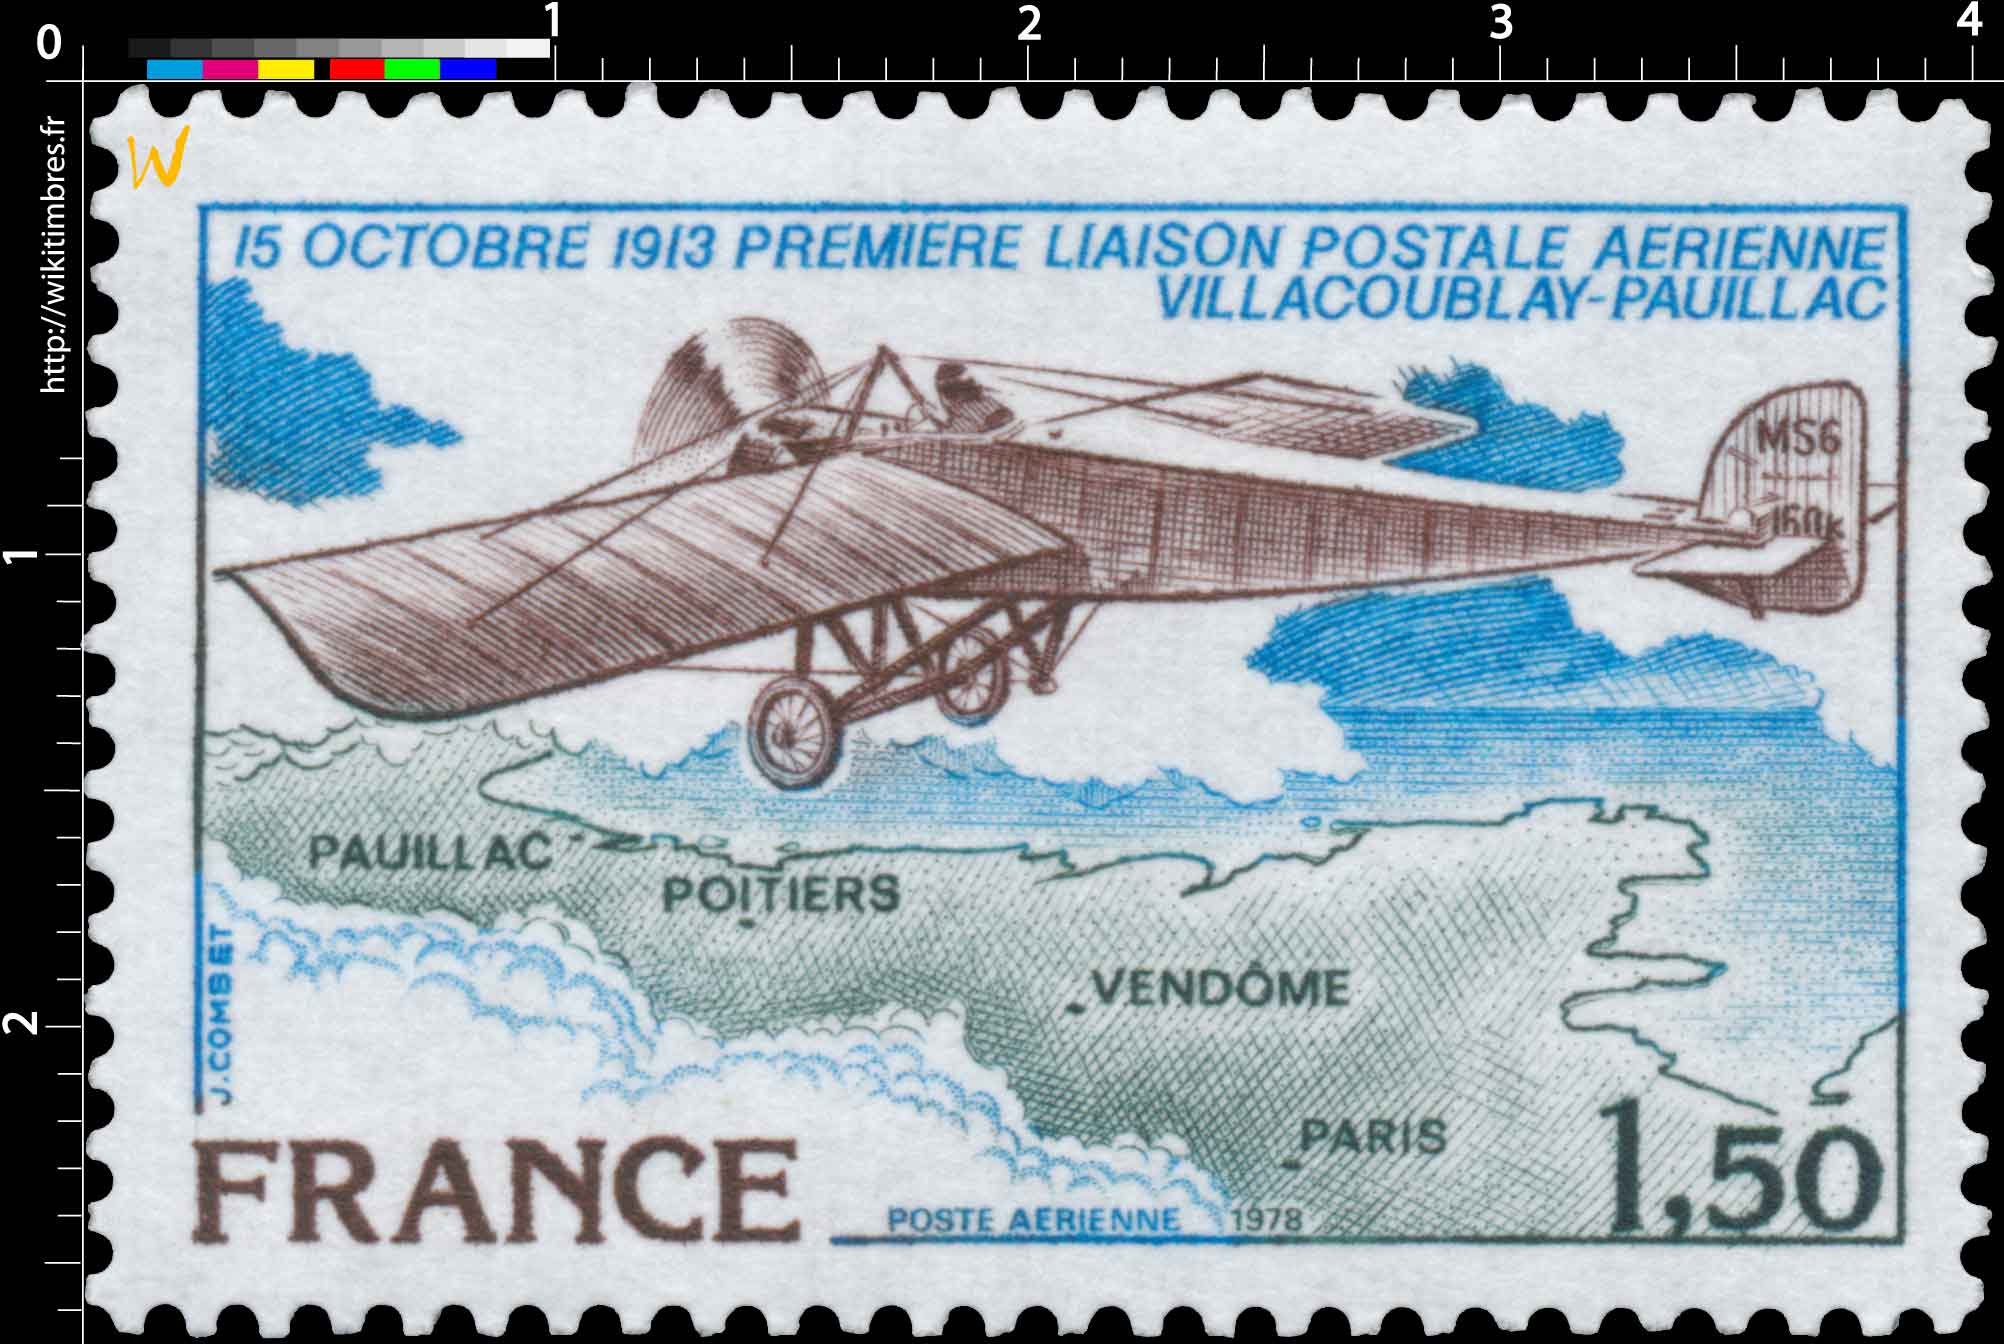 1978 15 OCTOBRE 1913 PREMIÈRE LIAISON POSTALE AÉRIENNE VILLACOUBLAY-PAUILLAC